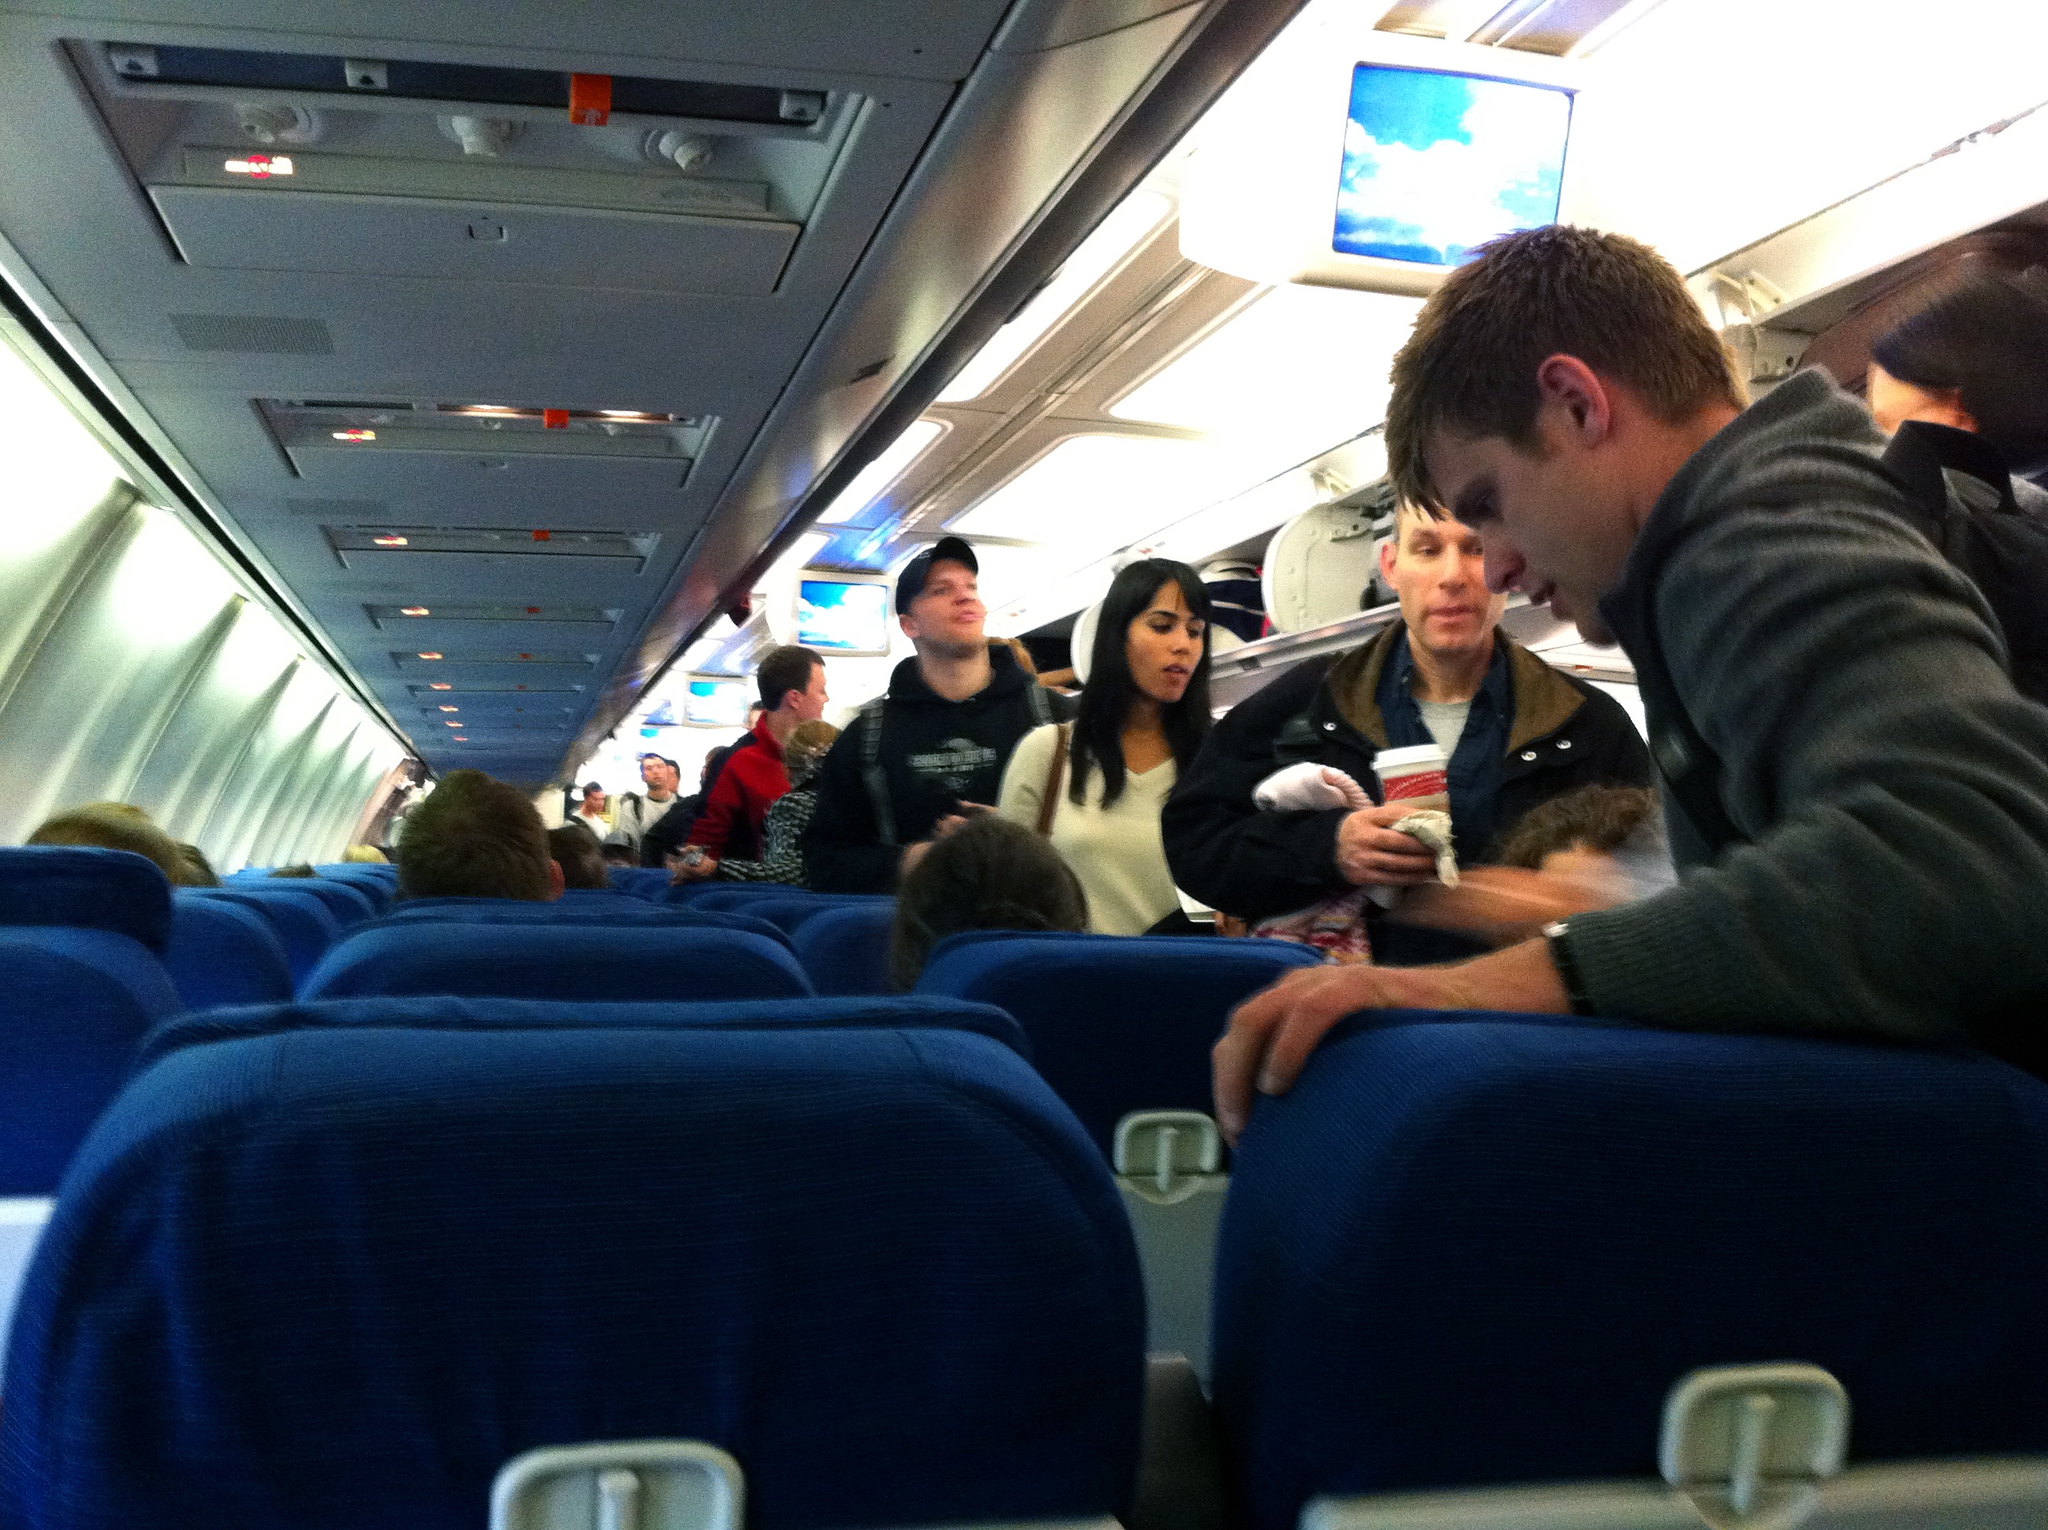 Passagers dans un avion | Source : flickr.com